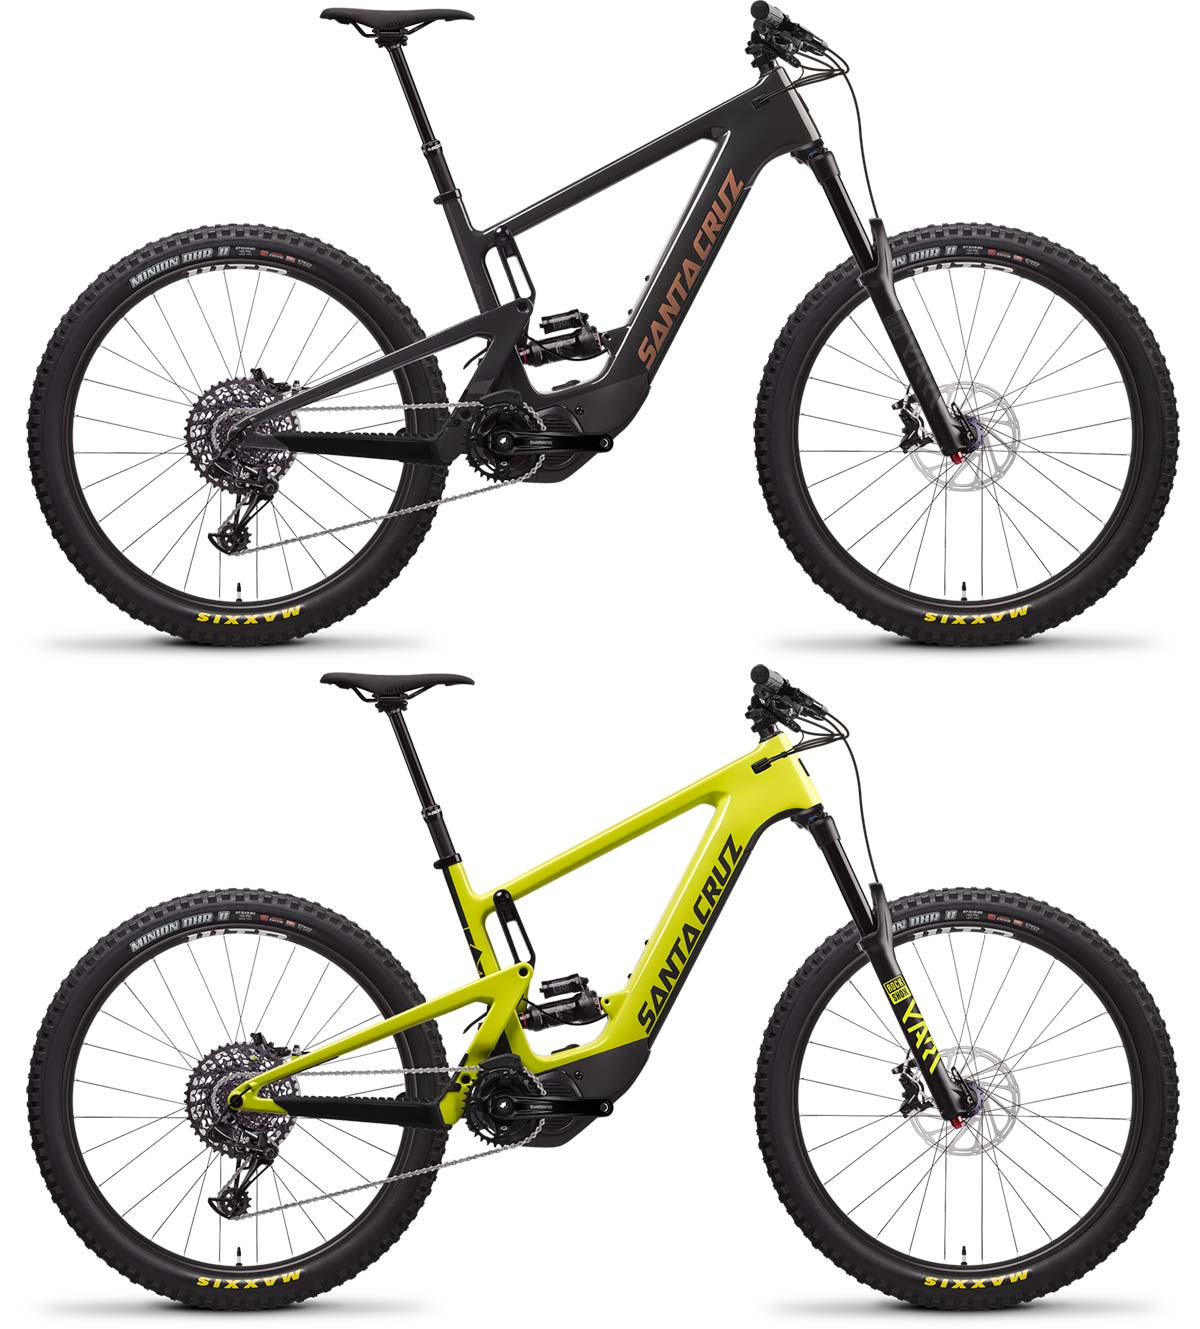 En TodoMountainBike: Santa Cruz Bicycles presenta la Heckler 8 y Heckler Lite MX, con motor Shimano EP8 y ruedas mixtas